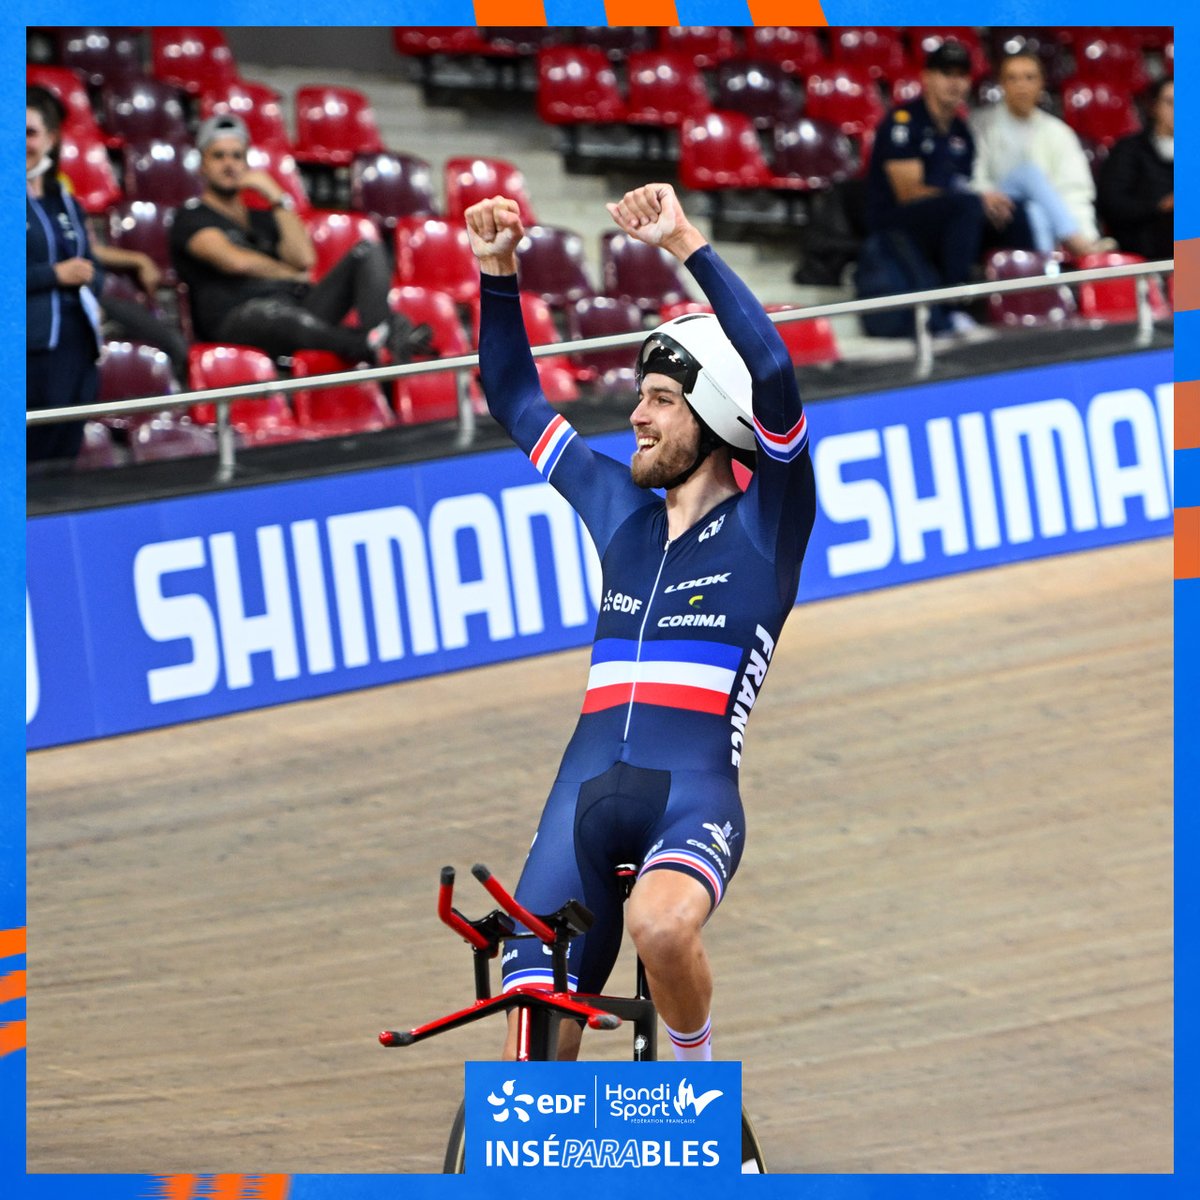 38 nations représentées parmi les 230 athlètes réunis au Vélodrome de Saint-Quentin-en-Yvelines pour ces Championnats du Monde de paracyclisme sur piste. Prêts pour un retour en images ? ⚡ 🚲 💨 #EnergieduSport #inséparables #Handisport #DLDJanv